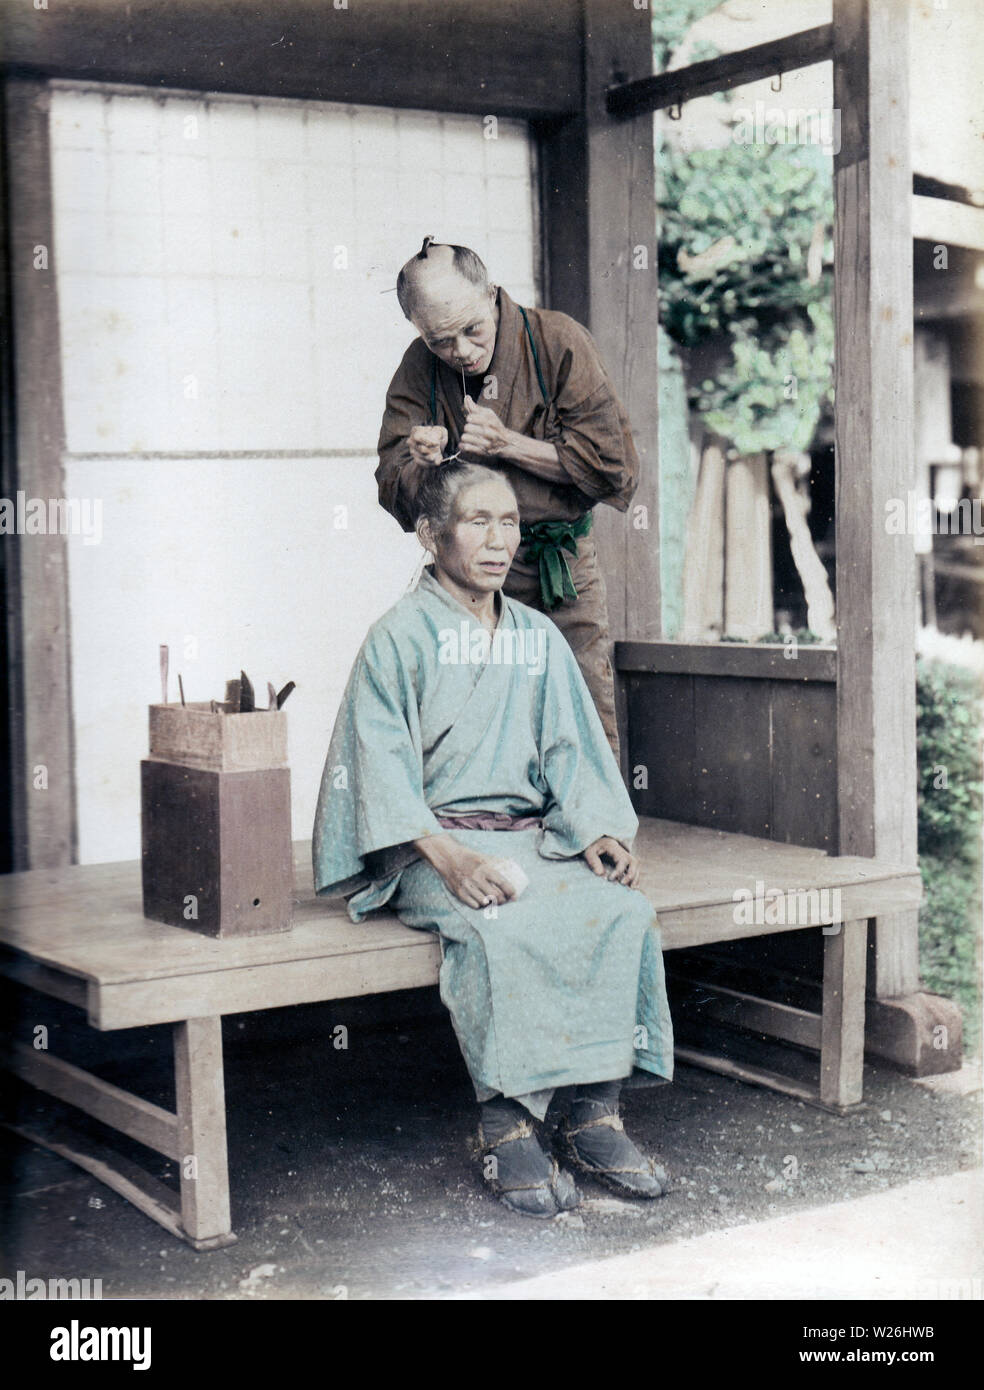 [1890s Japan - Japanische Friseur bei der Arbeit] - ein Friseur die Haare eines männlichen Kunden. Bis westlichen Frisuren während der Meiji Periode (1868-1912) gefördert wurden, japanische Männer trug ein chonmage Haarschopf. Der Werkzeugkasten, deutet darauf hin, dass Dies ist ein Reisen Friseur. 19 Vintage albumen Foto. Stockfoto